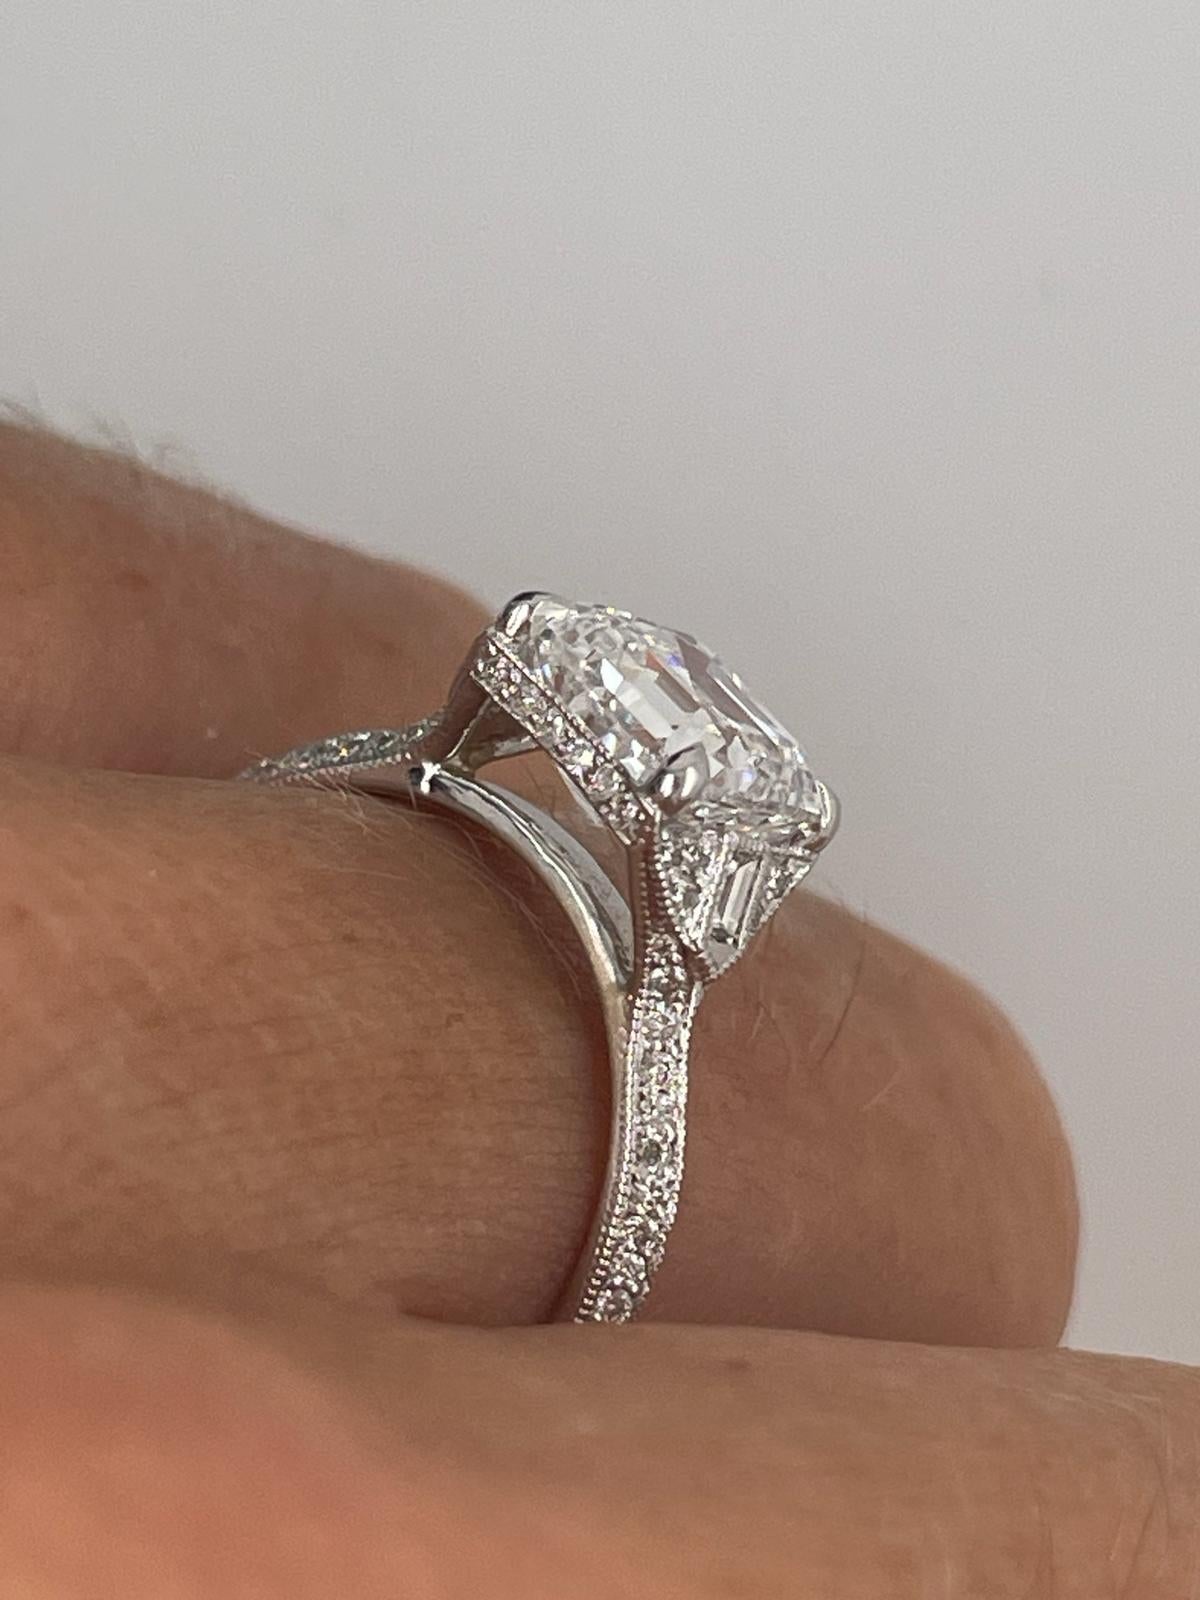 For Sale:  2ct Art Deco asscher cut diamond ring 2